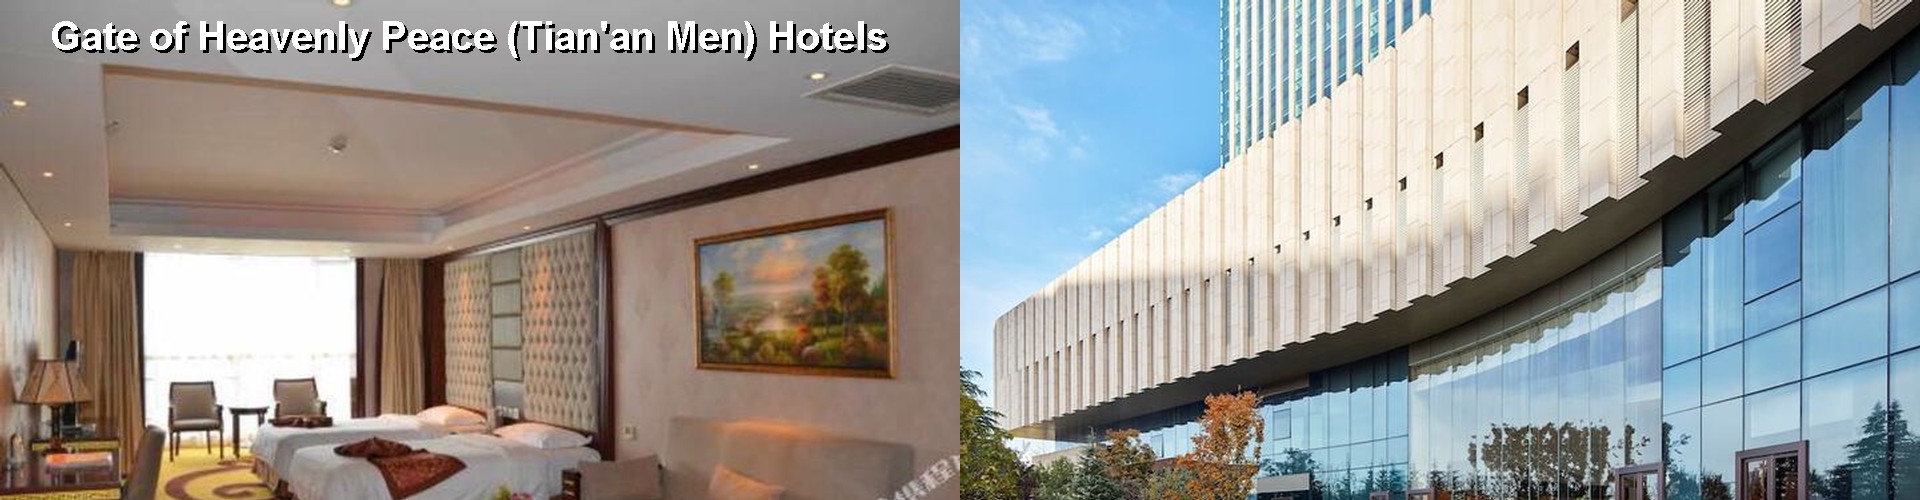 3 Best Hotels near Gate of Heavenly Peace (Tian'an Men)